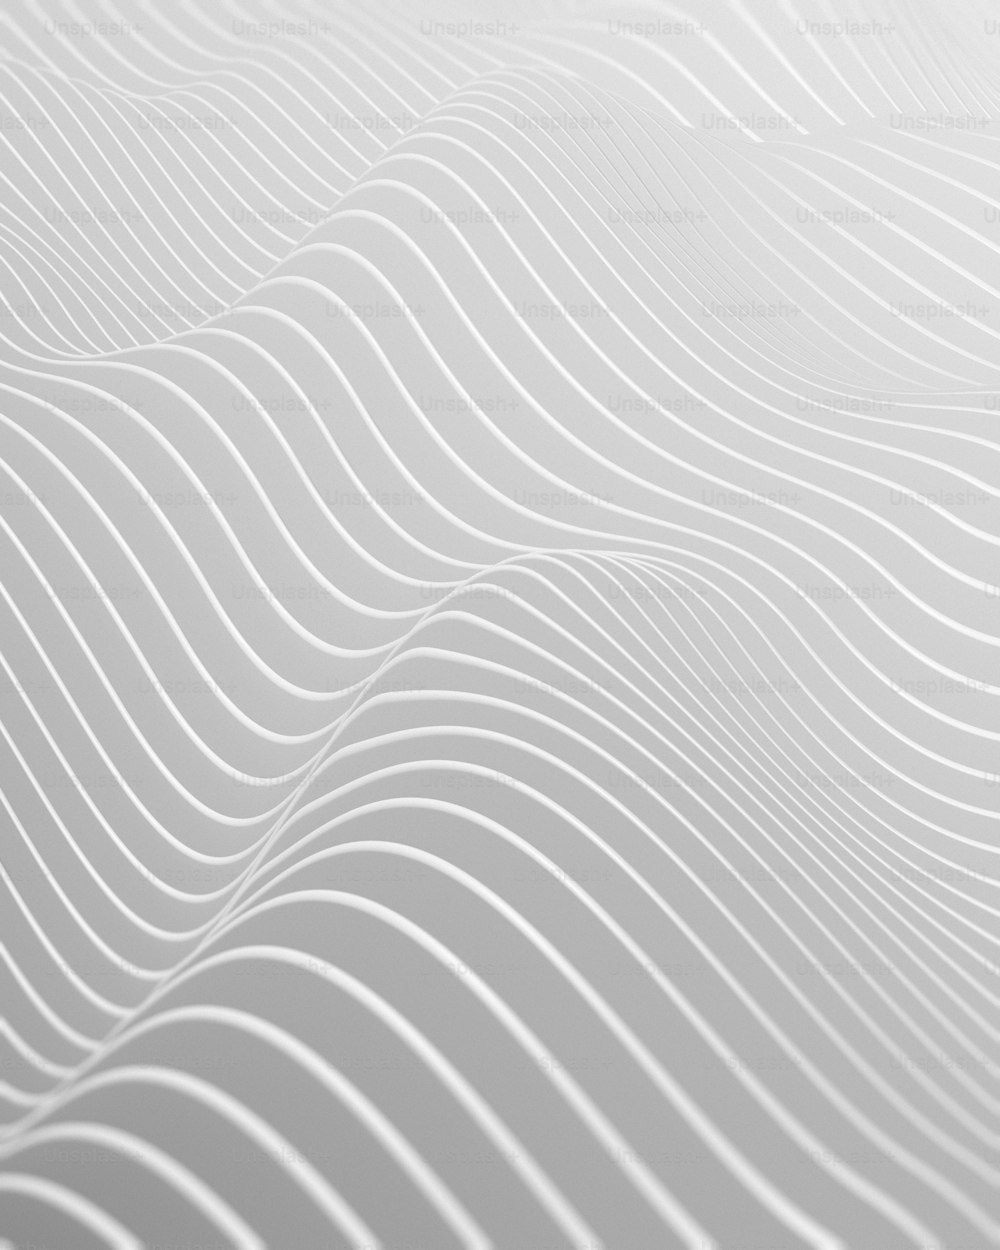 Un fond blanc abstrait aux lignes ondulées